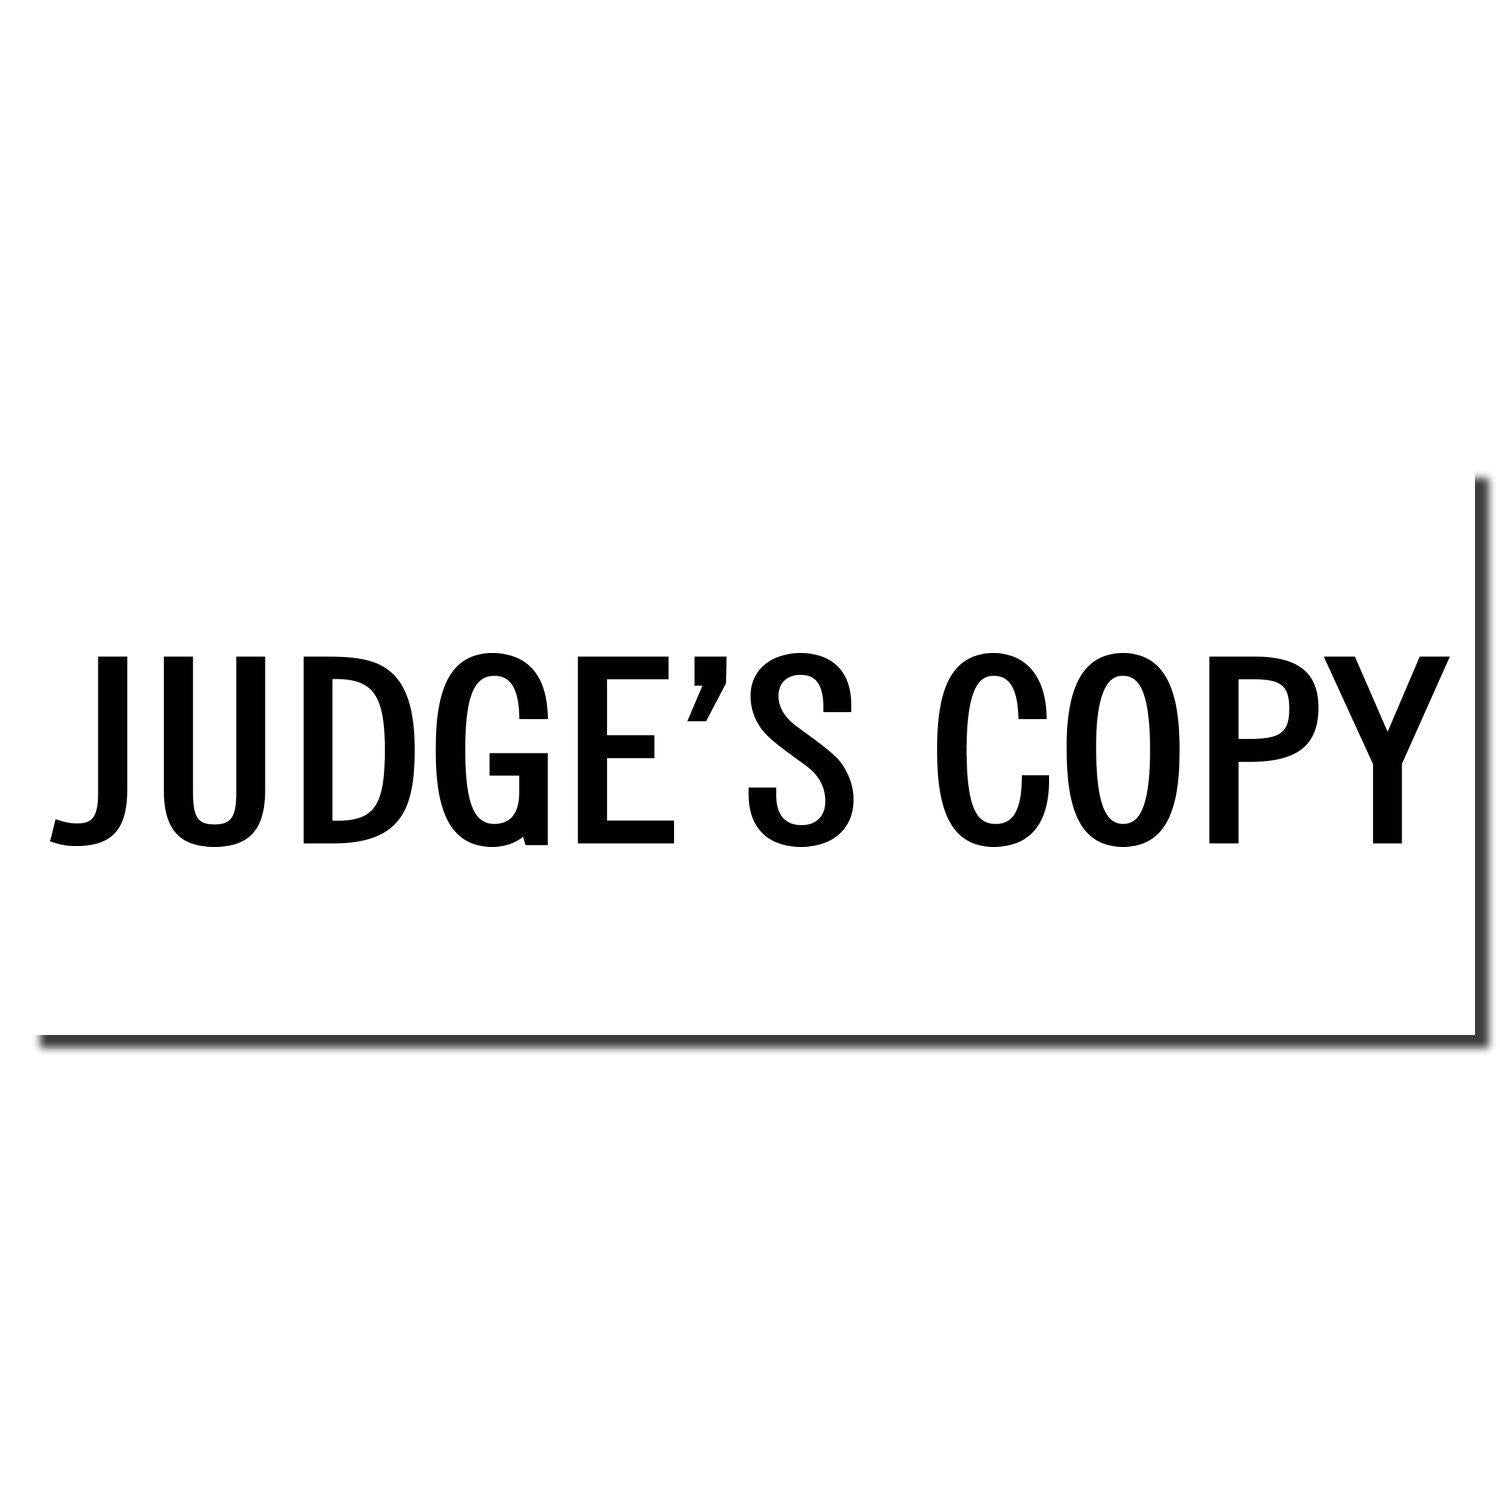 Enlarged Imprint Large Judge's Copy Rubber Stamp Sample